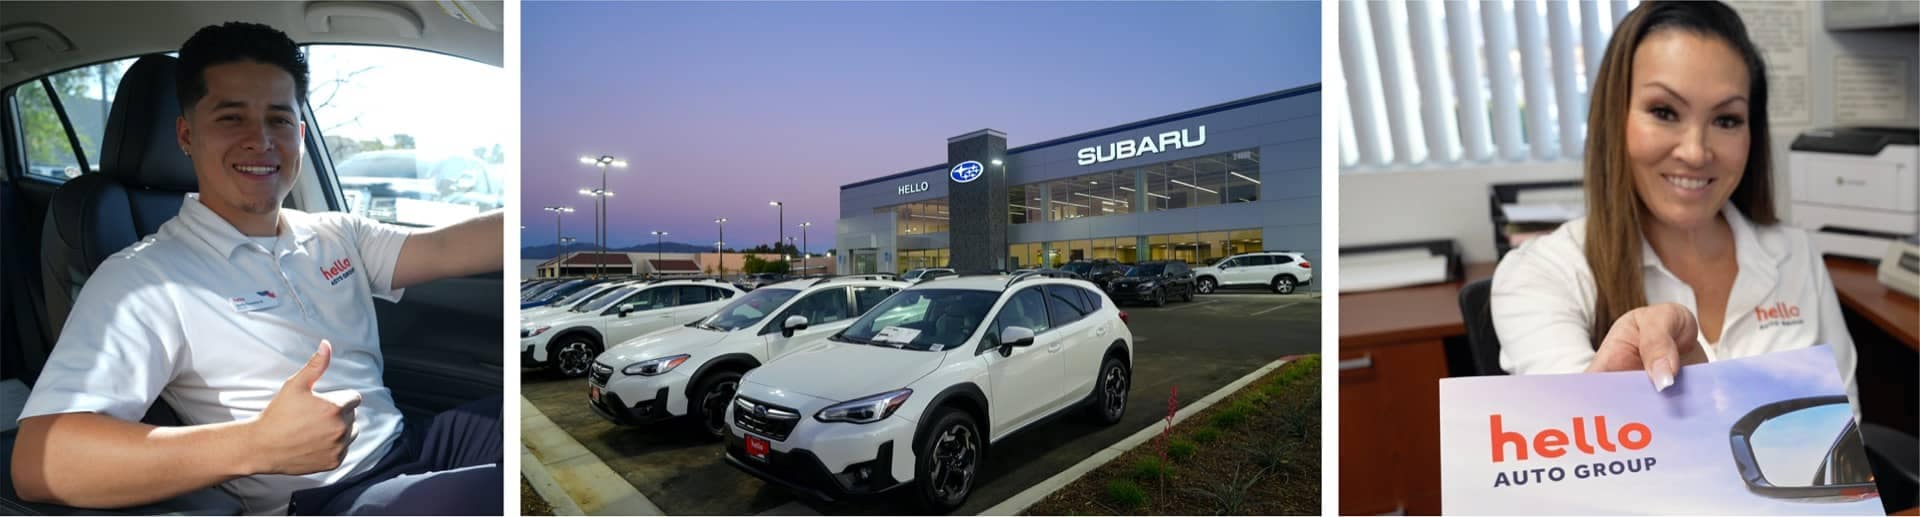 Hello Subaru of Valencia dealership exterior